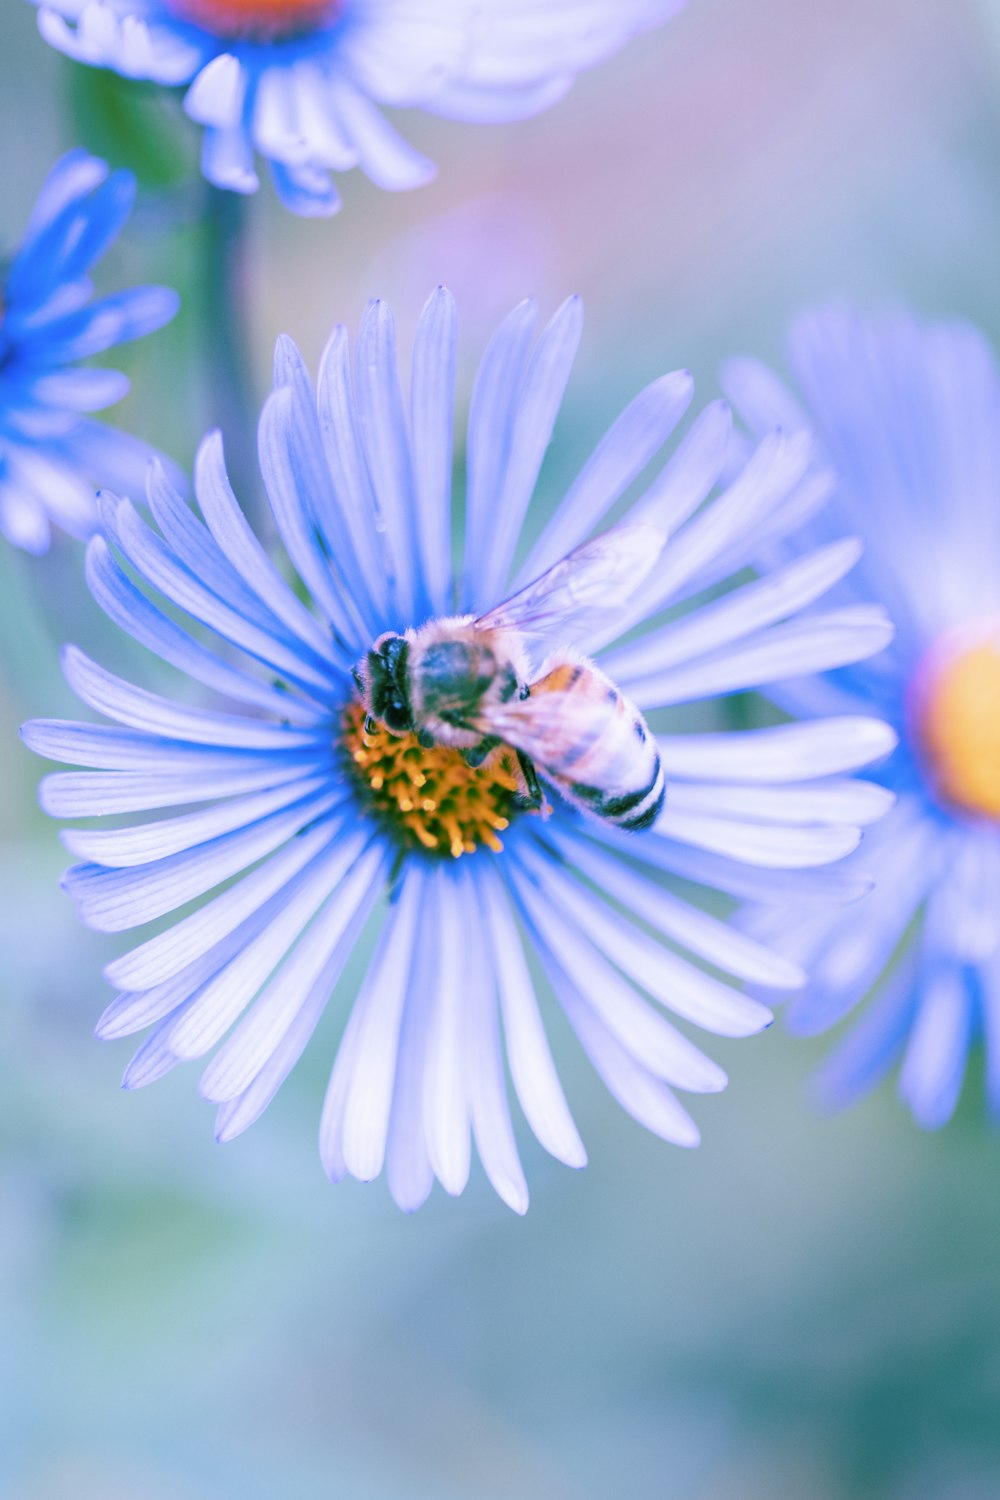 abeille noire et jaune sur fleur bleue et blanche